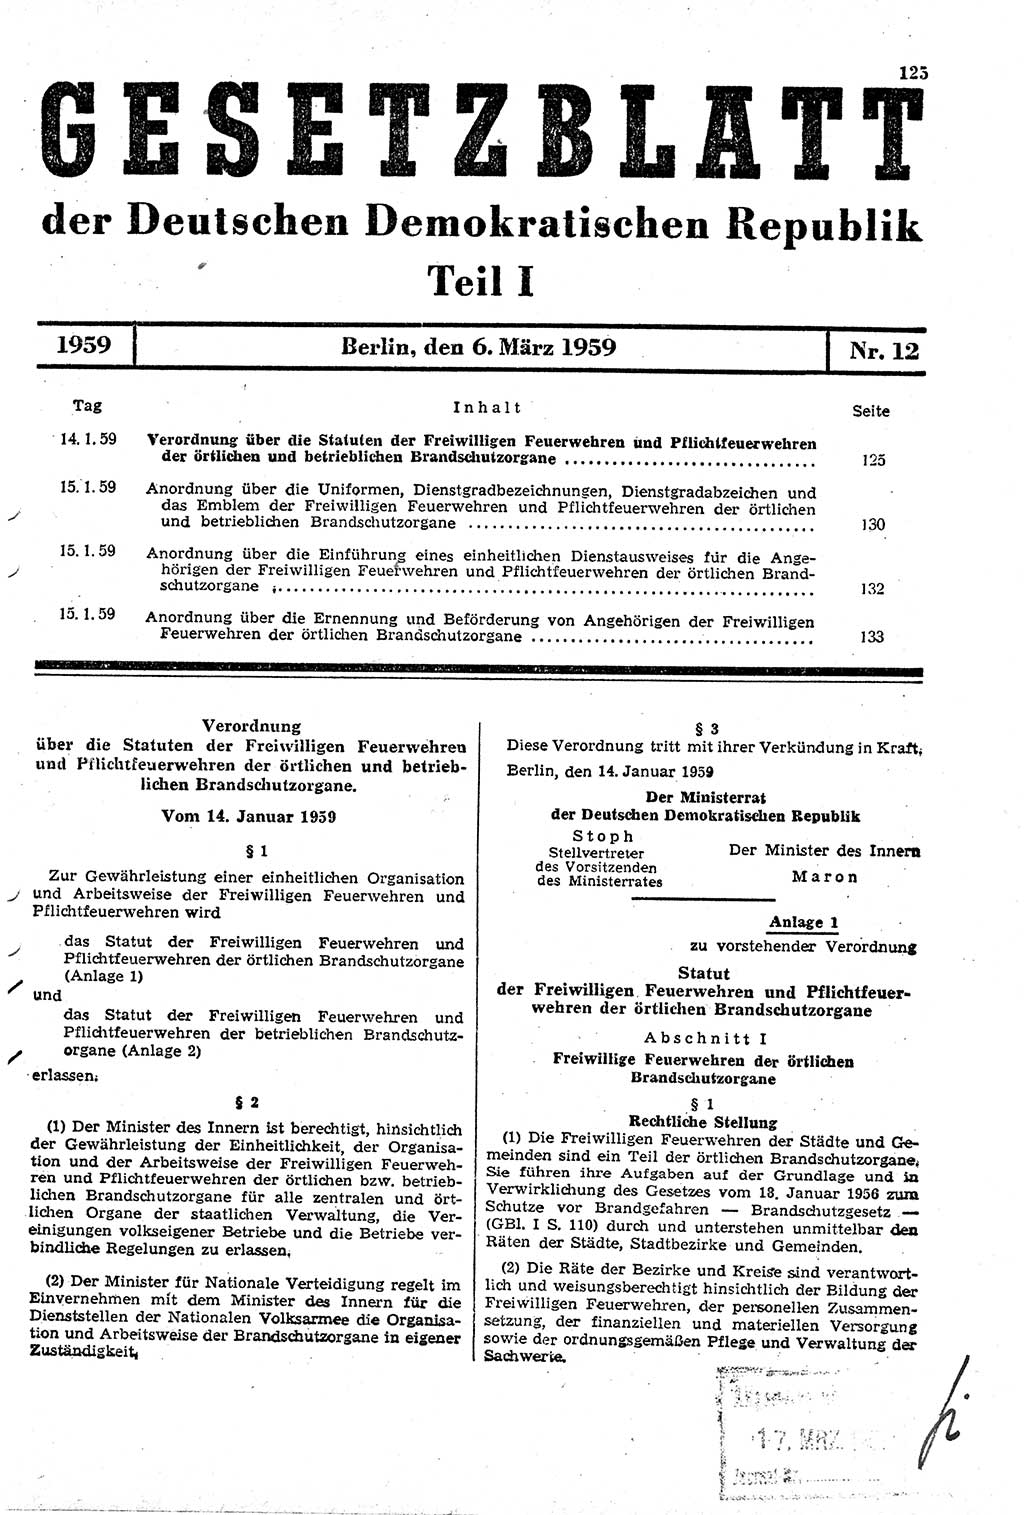 Gesetzblatt (GBl.) der Deutschen Demokratischen Republik (DDR) Teil Ⅰ 1959, Seite 125 (GBl. DDR Ⅰ 1959, S. 125)